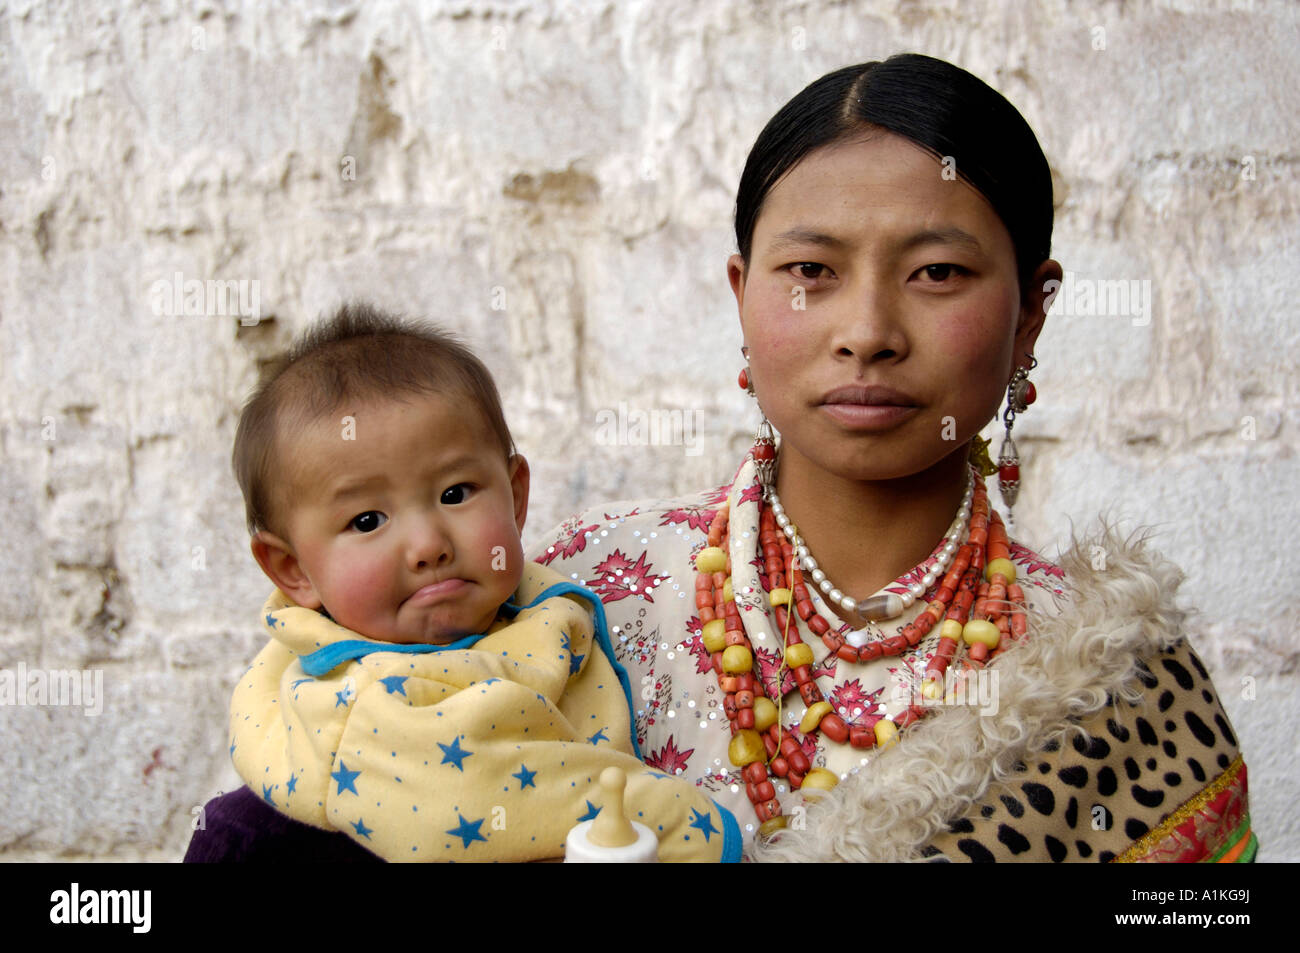 Une femme tenant un bébé tibétain à Lhassa Tibet 19 OCT 2006 Banque D'Images